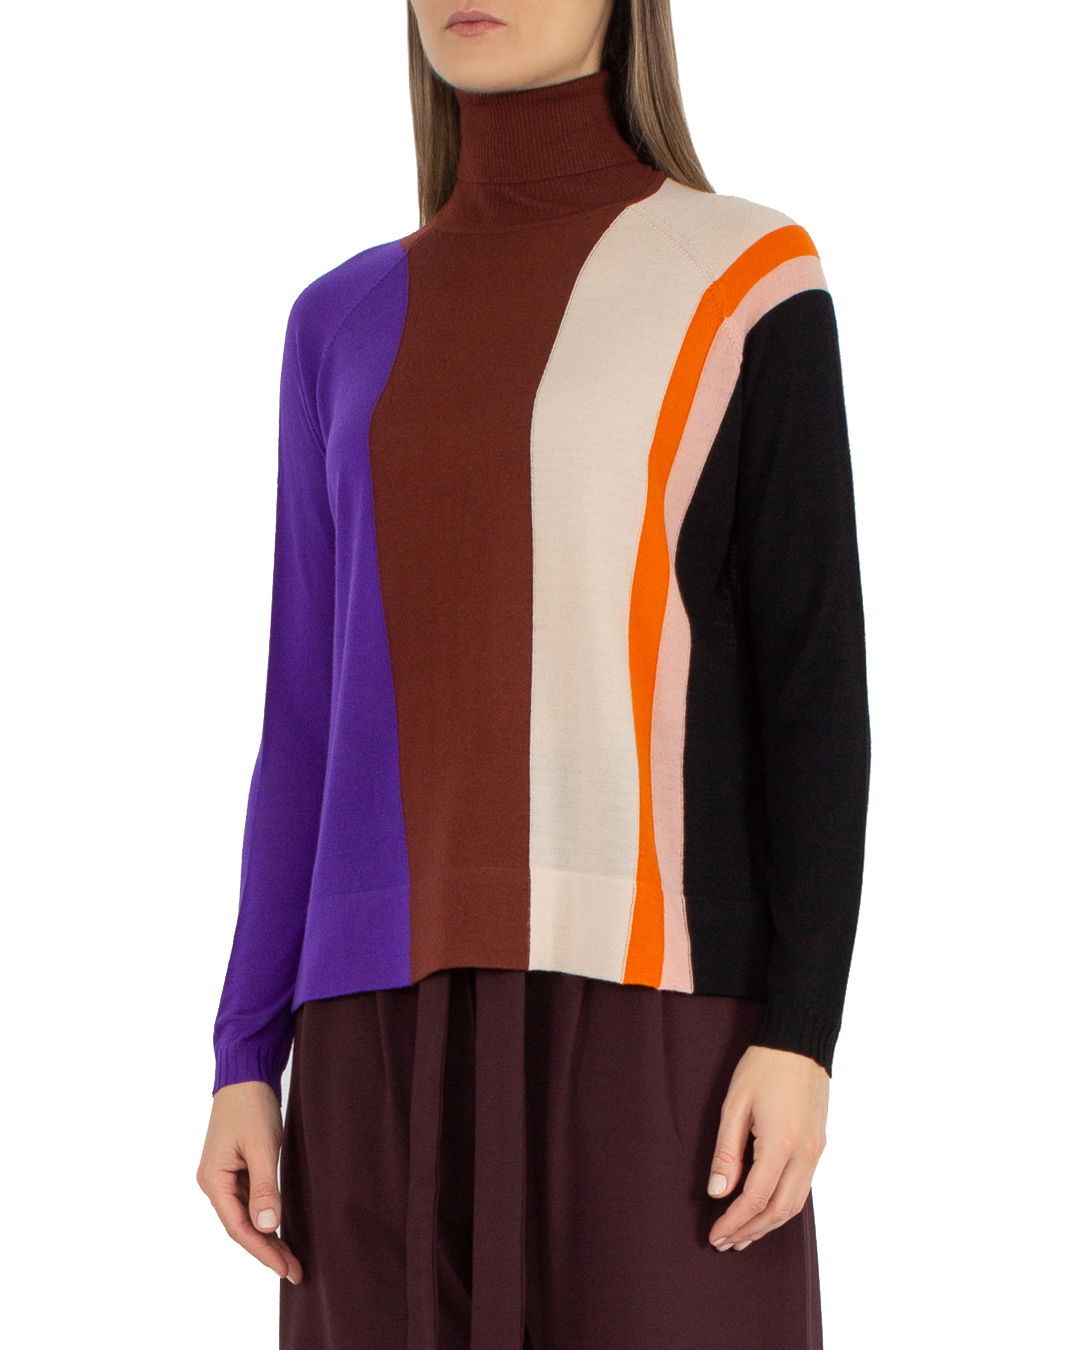 свитер PSOPHIA 501PUL1689 коричневый+фиолетовый+принт l, размер l, цвет коричневый+фиолетовый+принт 501PUL1689 коричневый+фиолетовый+принт l - фото 3